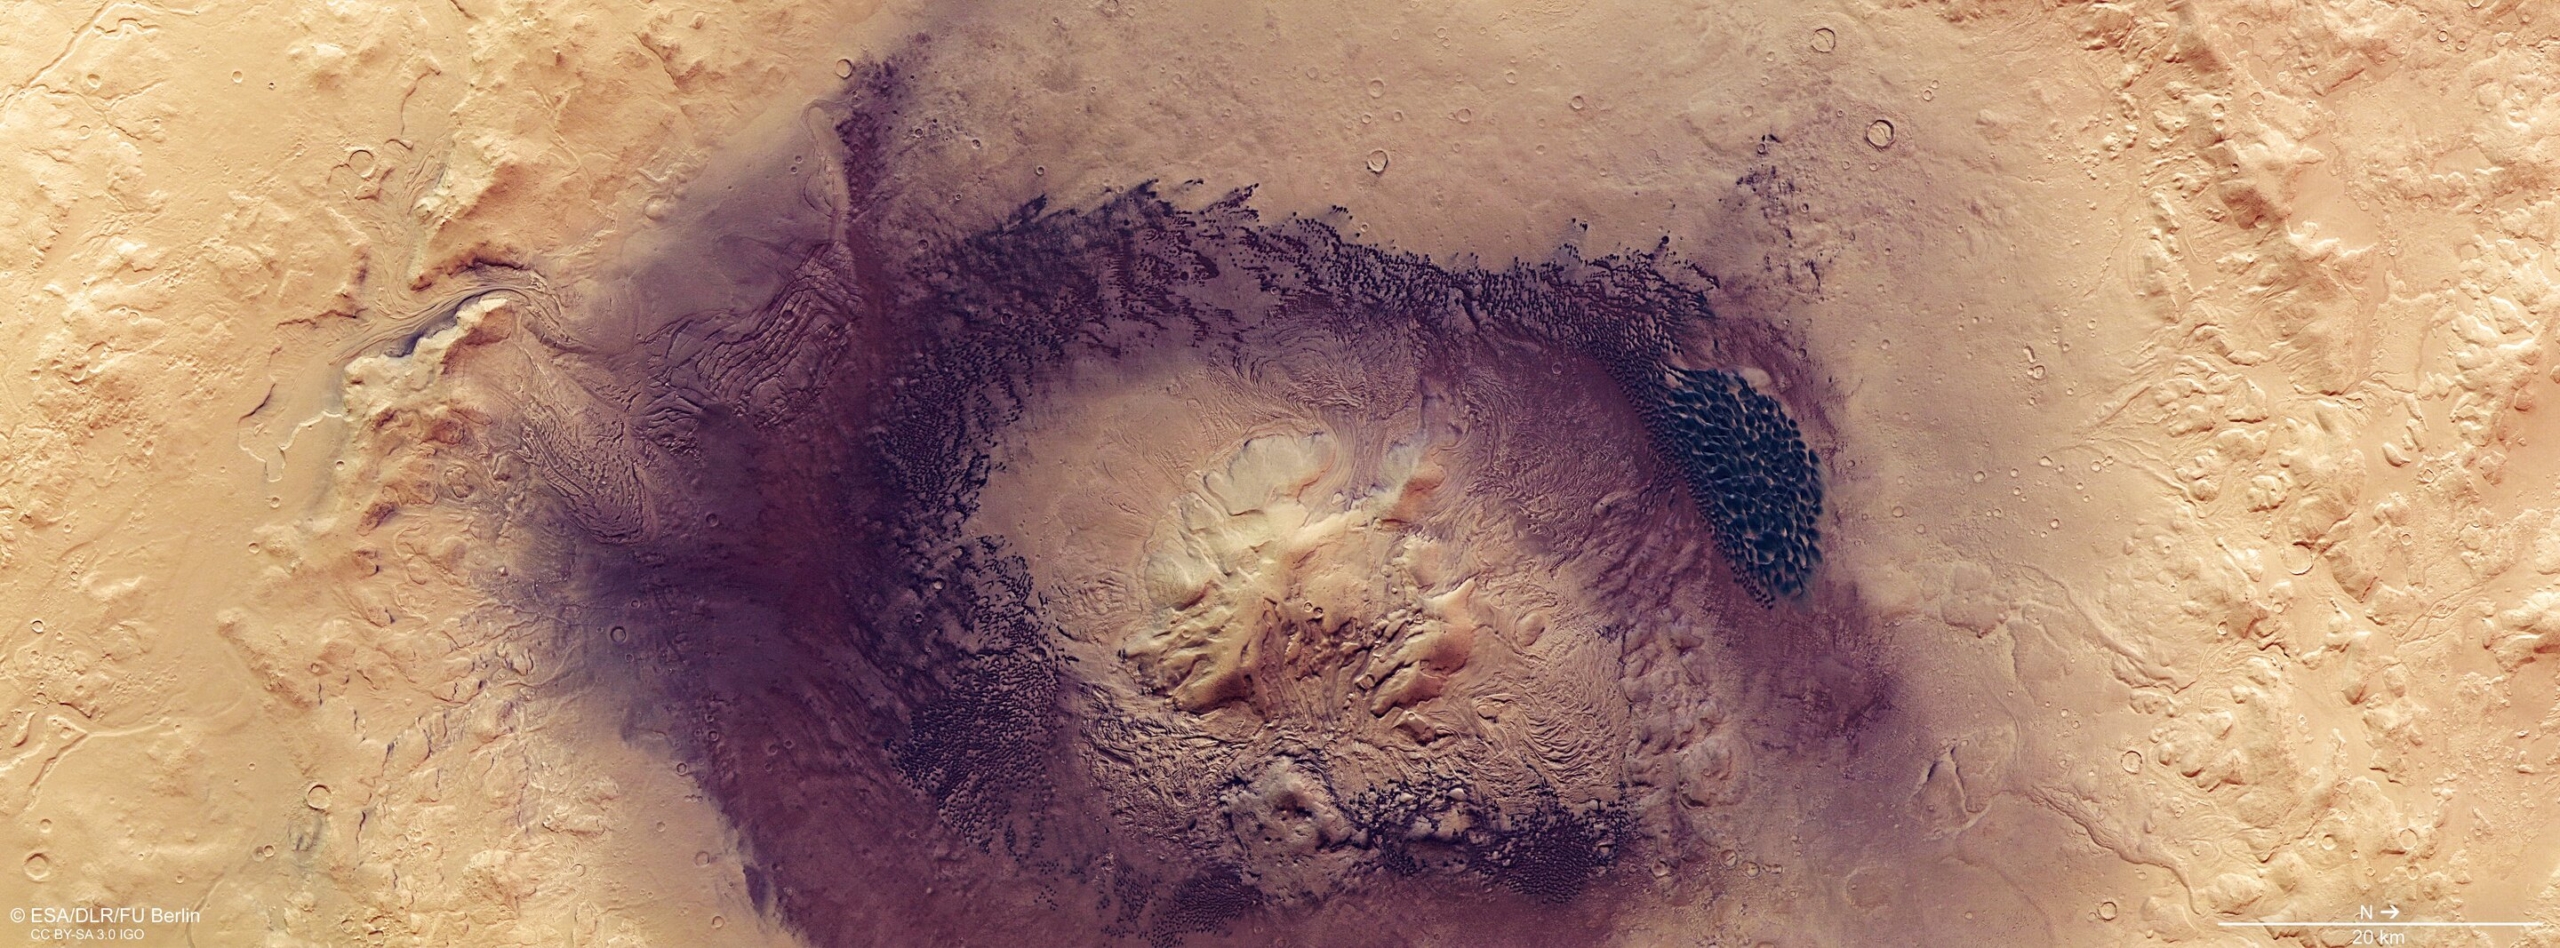 Изабелла (кратер)